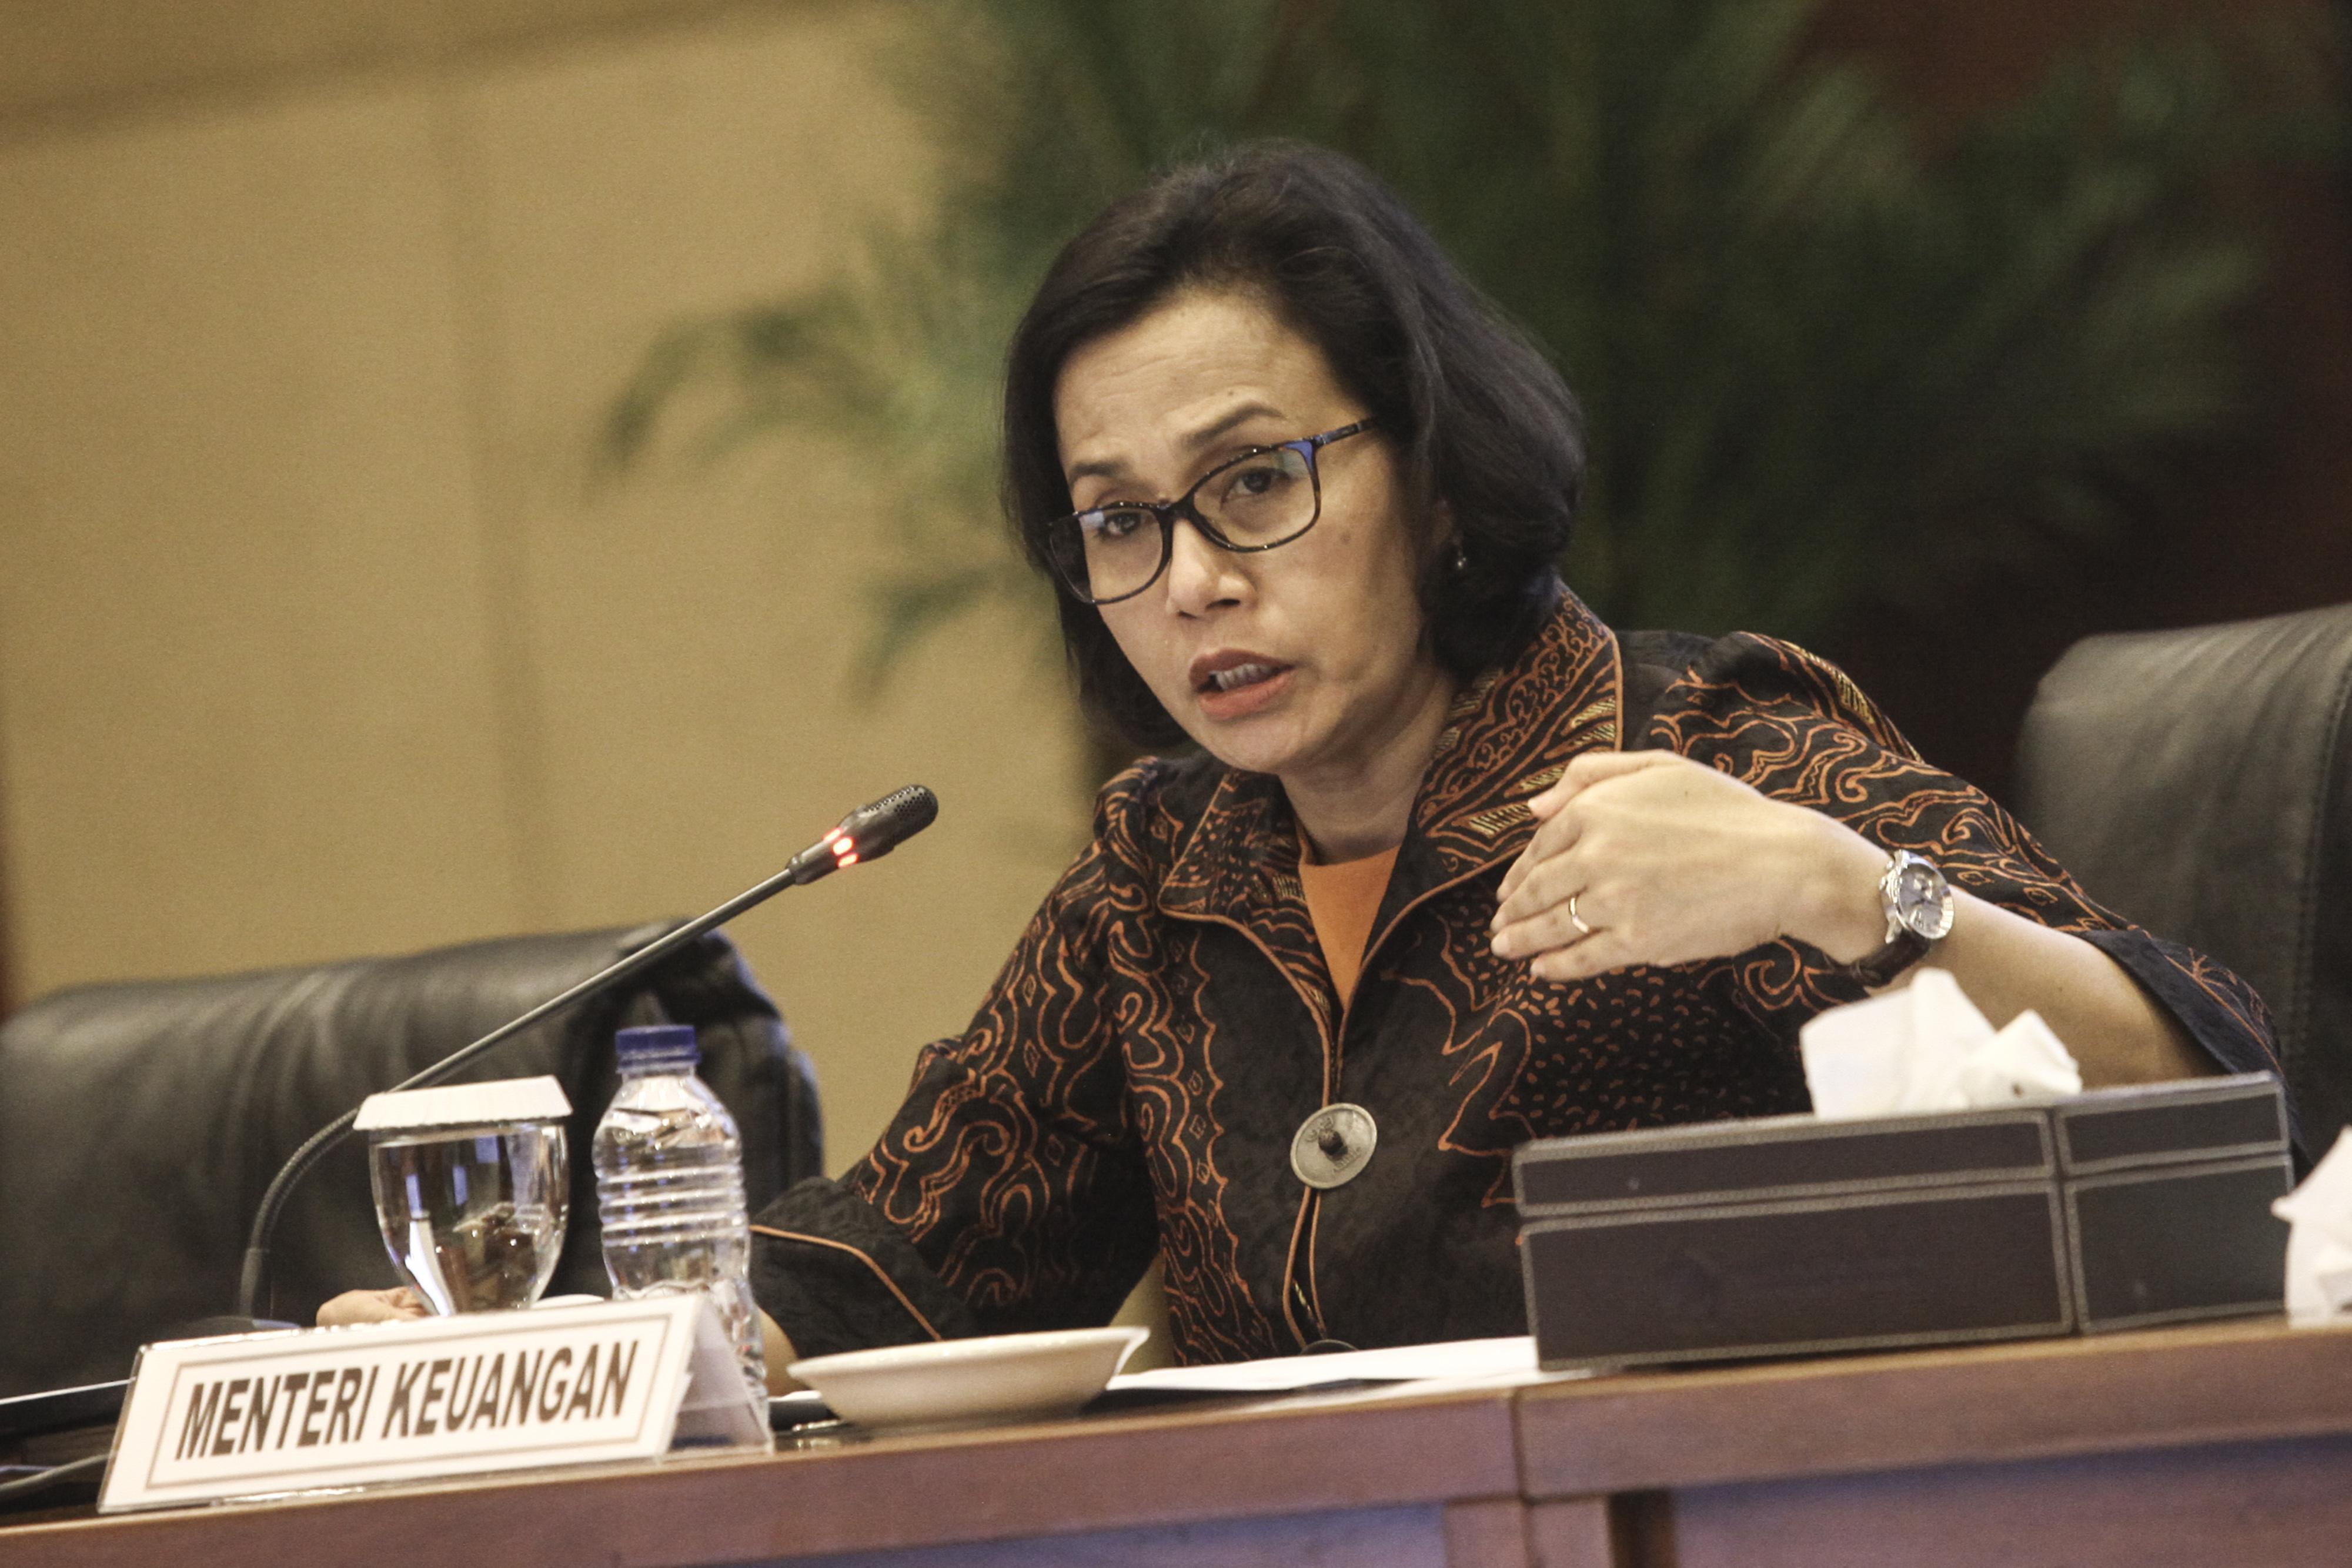 Pertumbuhan Ekonomi Indonesia Ditargetkan 5,2 hingga 5,6 Persen dalam RAPBN 2019